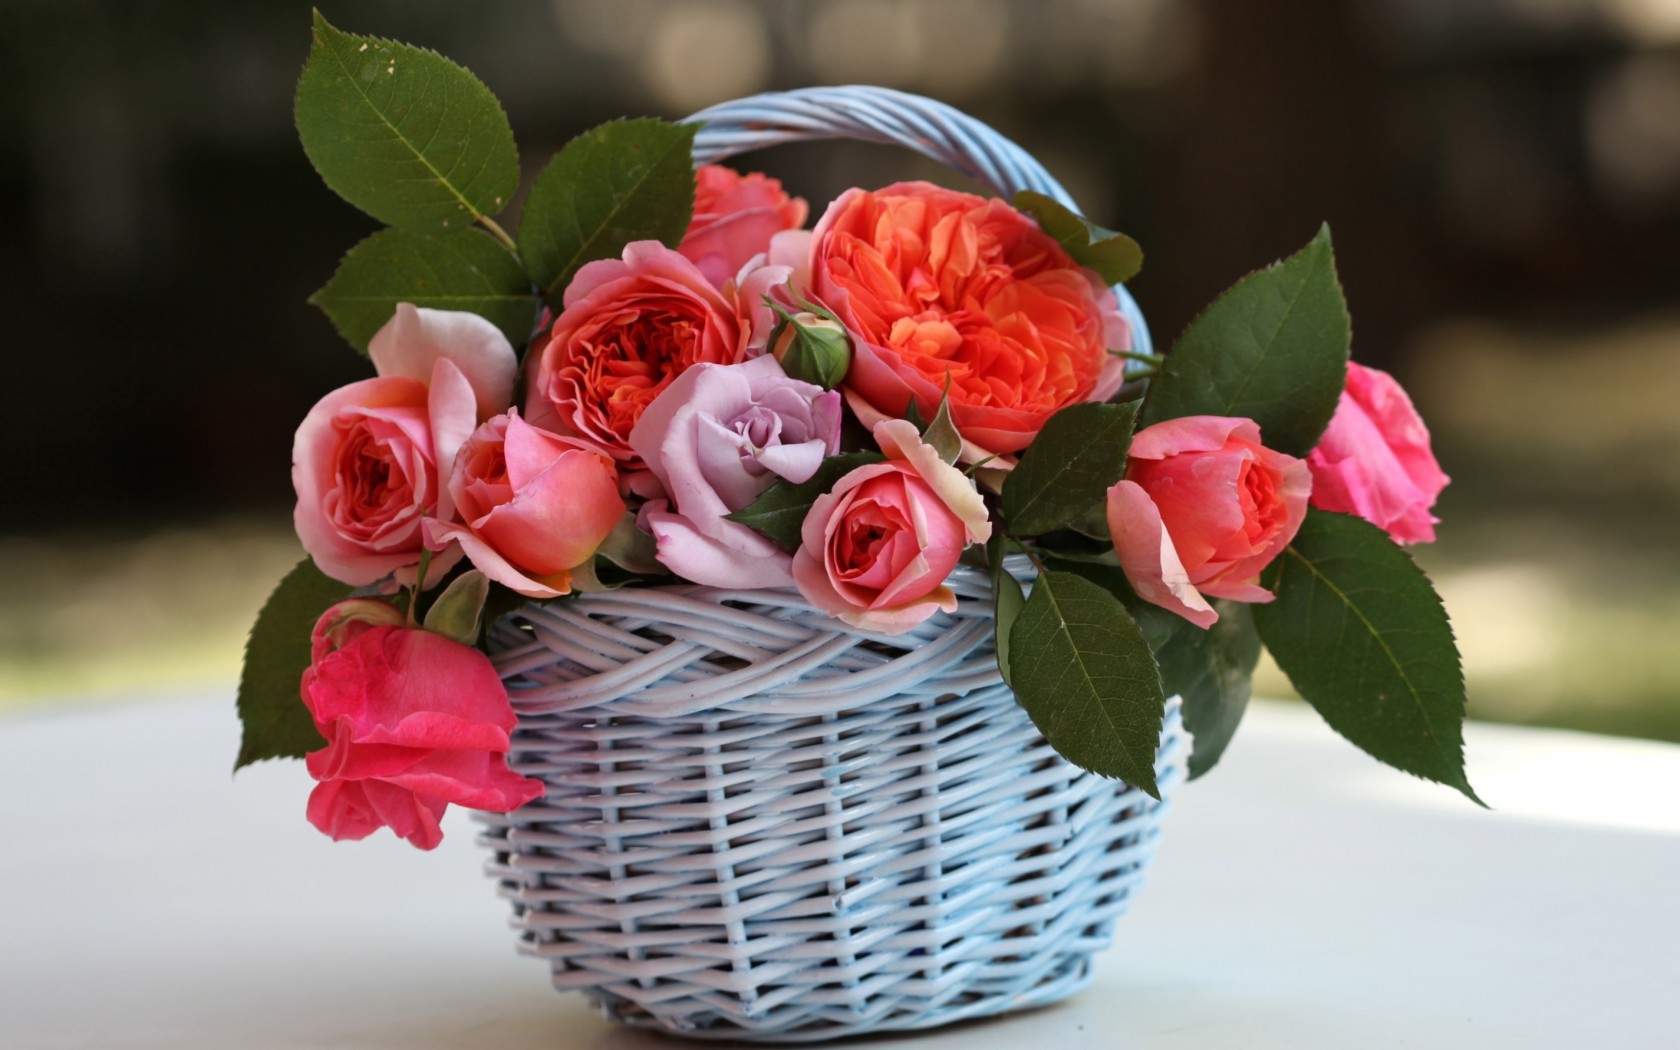 Скачать обои бесплатно Букеты, Растения, Цветы, Розы картинка на рабочий стол ПК